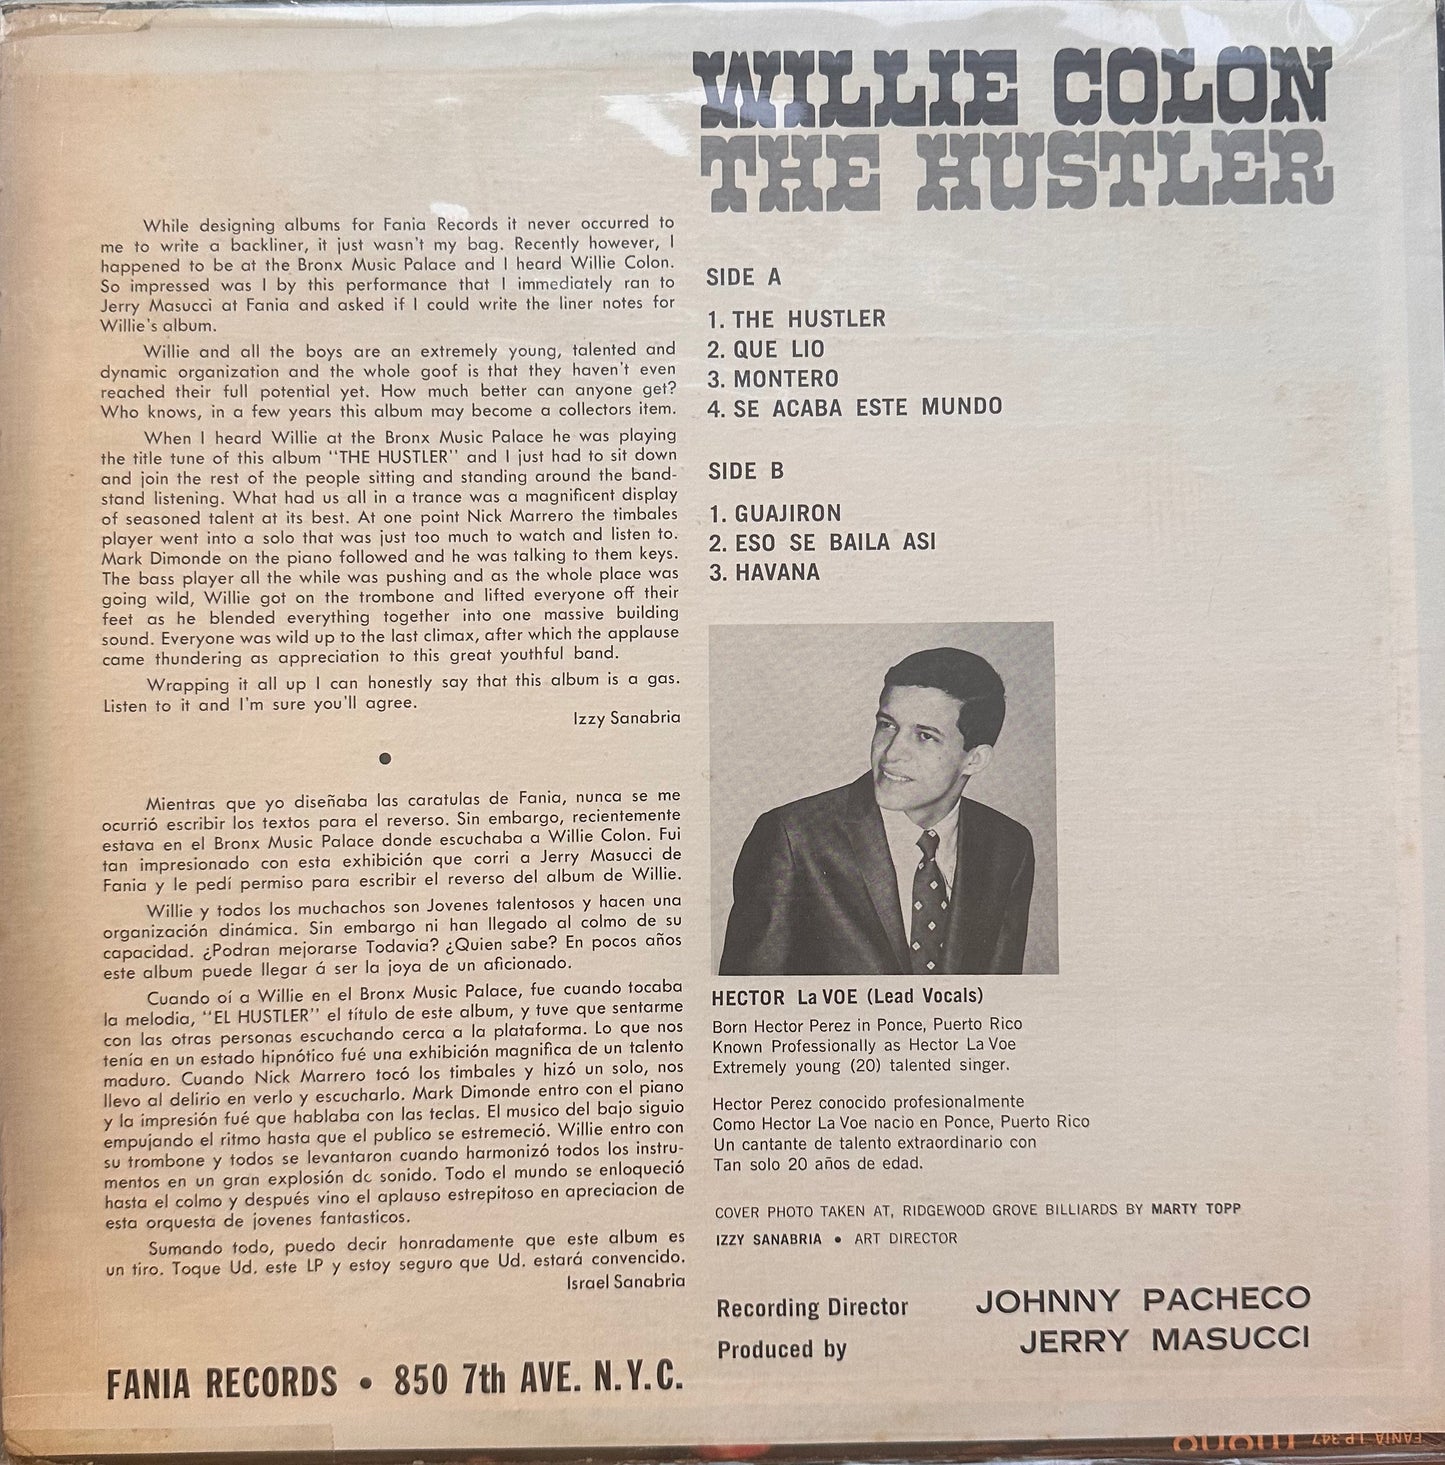 The Hustler - Willie Colon